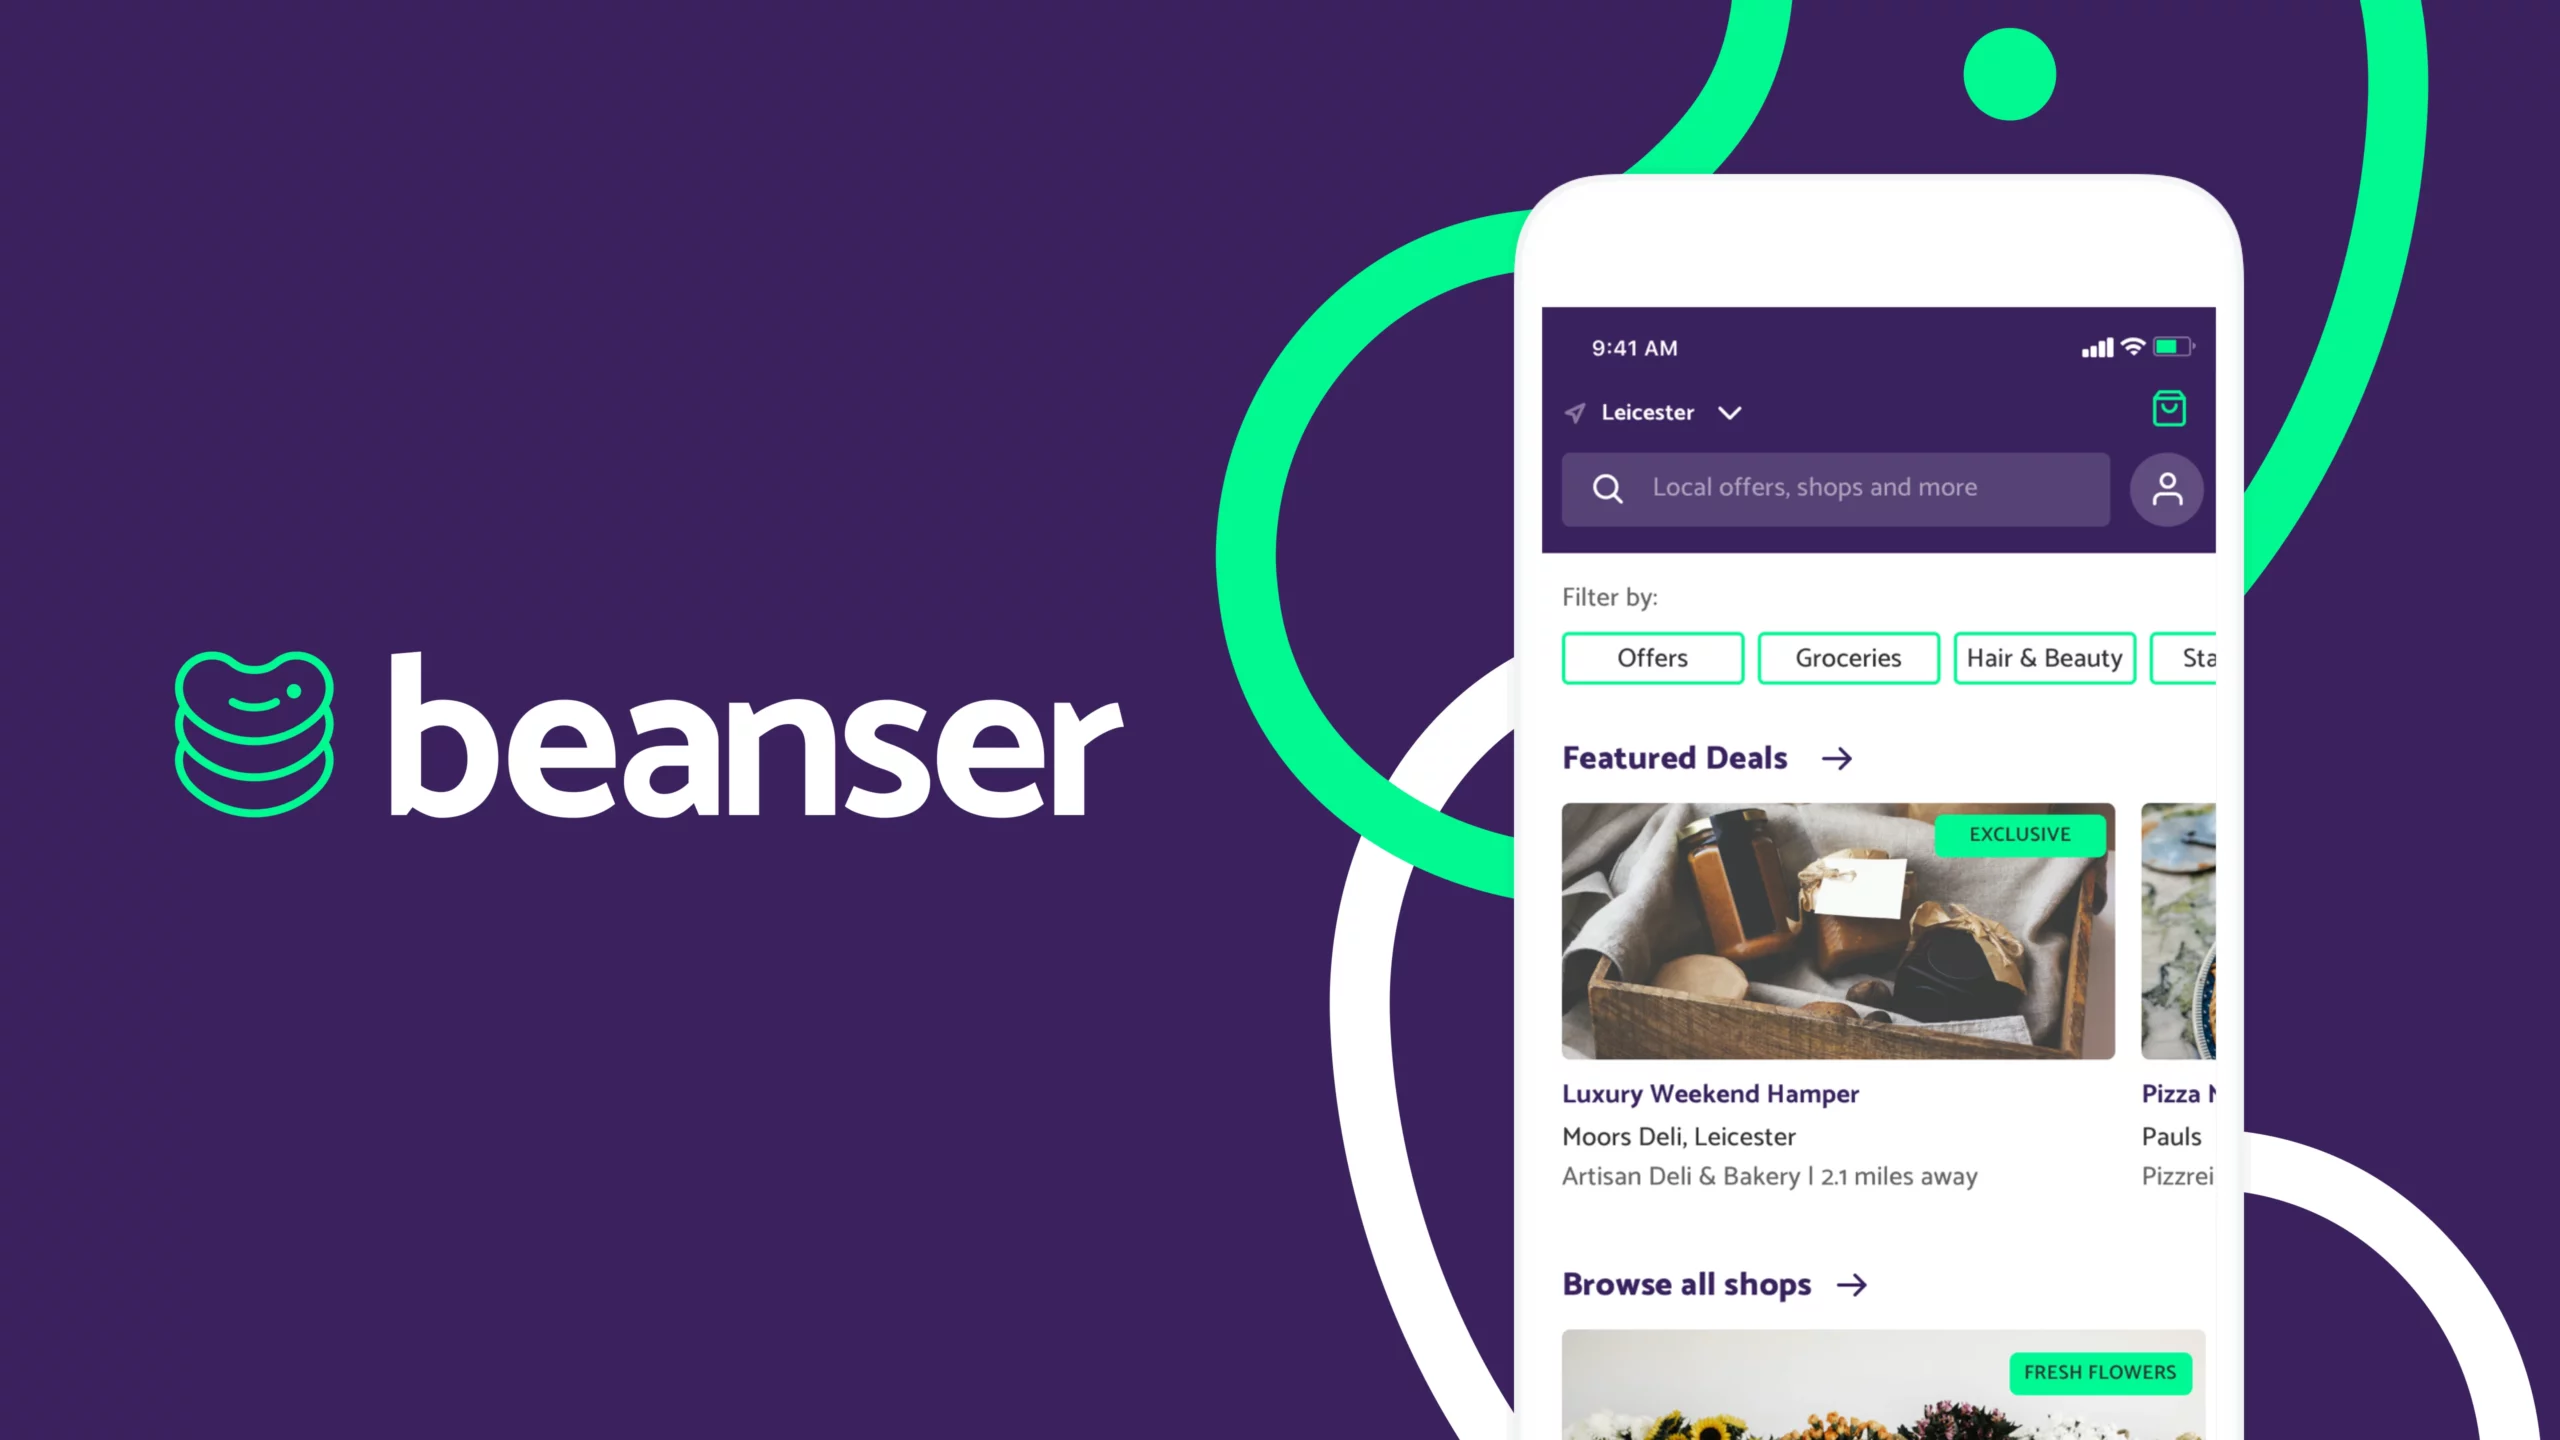 Beanser mobile app image and Beanser logo